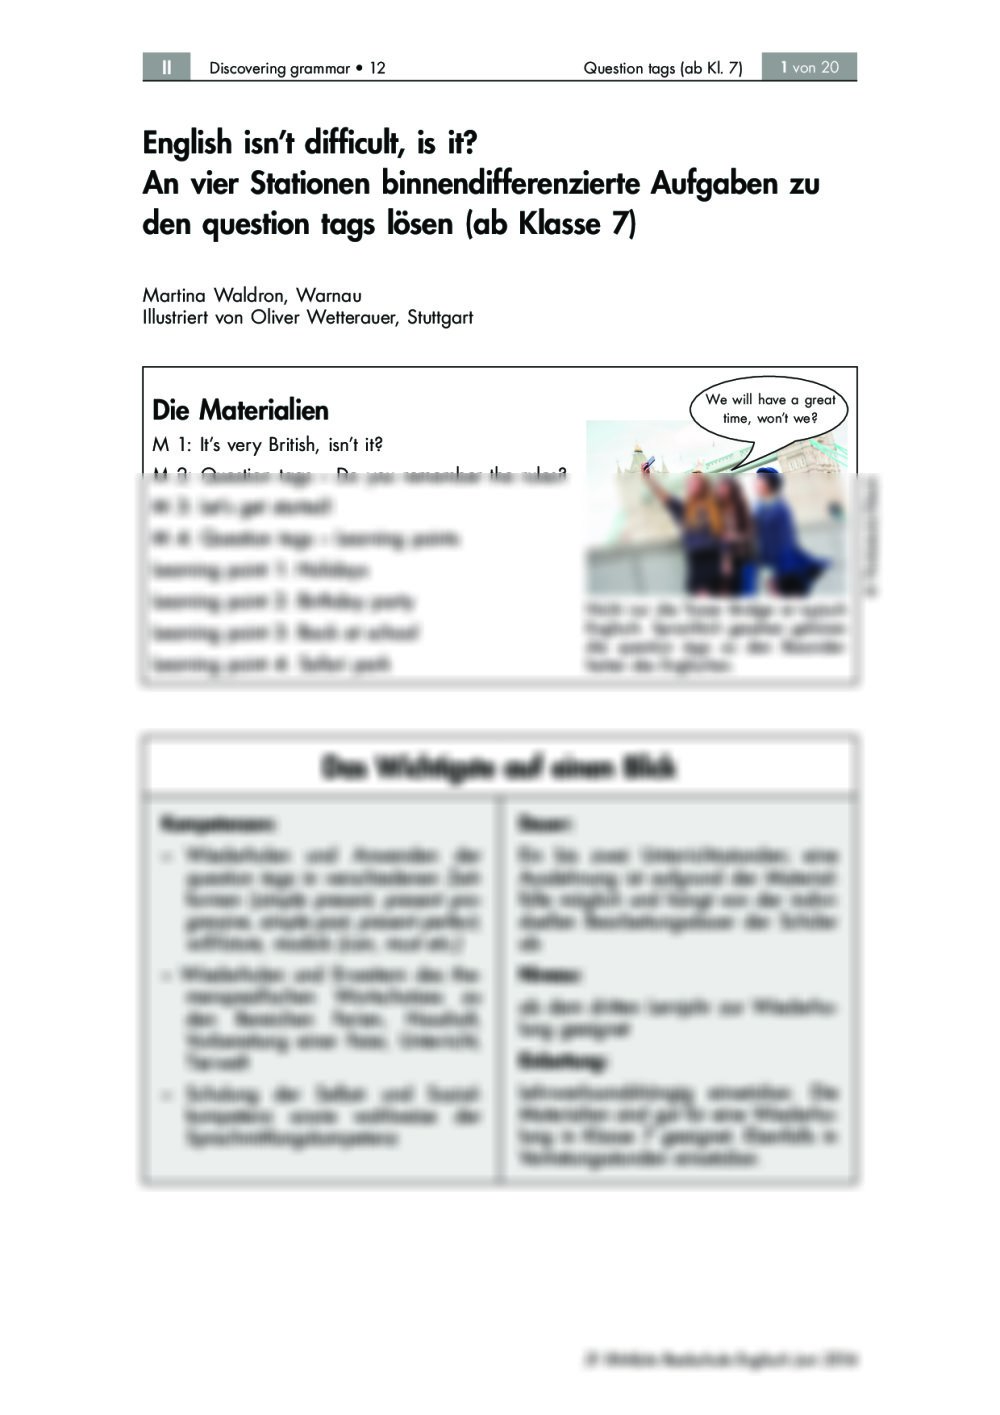 An vier Stationen binnendifferenzierte Aufgaben zu den "question tags" lösen - Seite 1